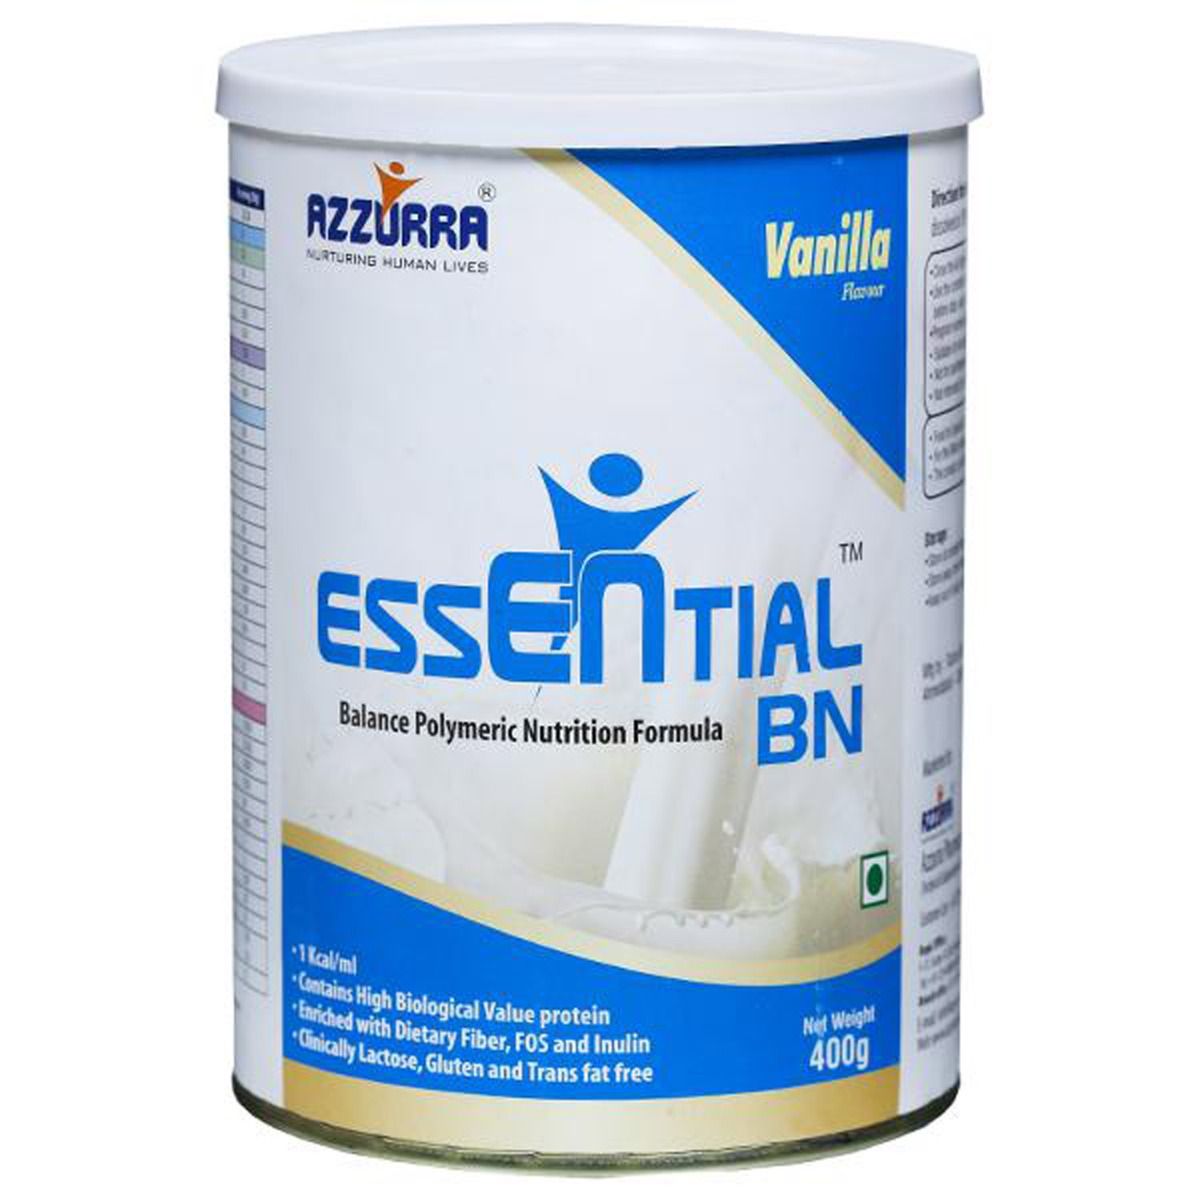 Buy Essential BN Vanilla Flavoured Powder, 400 gm Tin Online